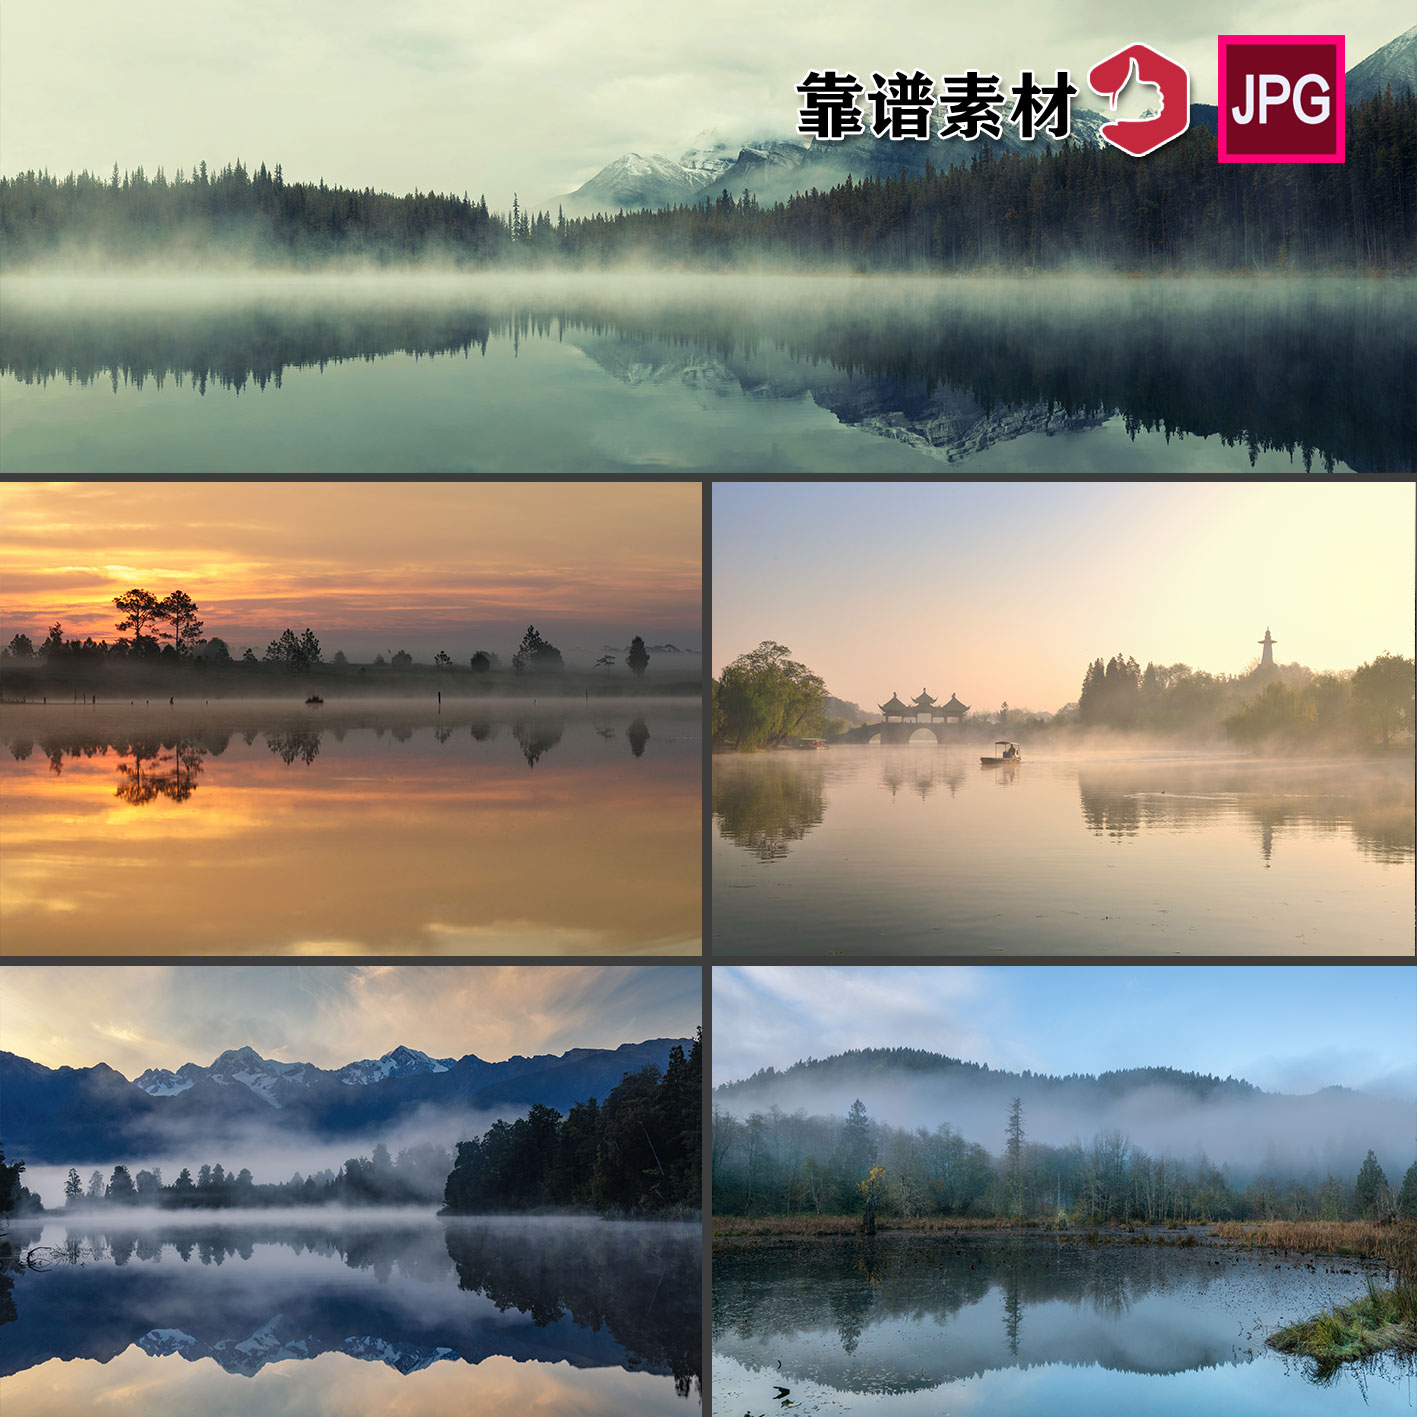 意境湖泊倒影山水画风景雾山水墨中国风背景墙装饰画图片设计素材